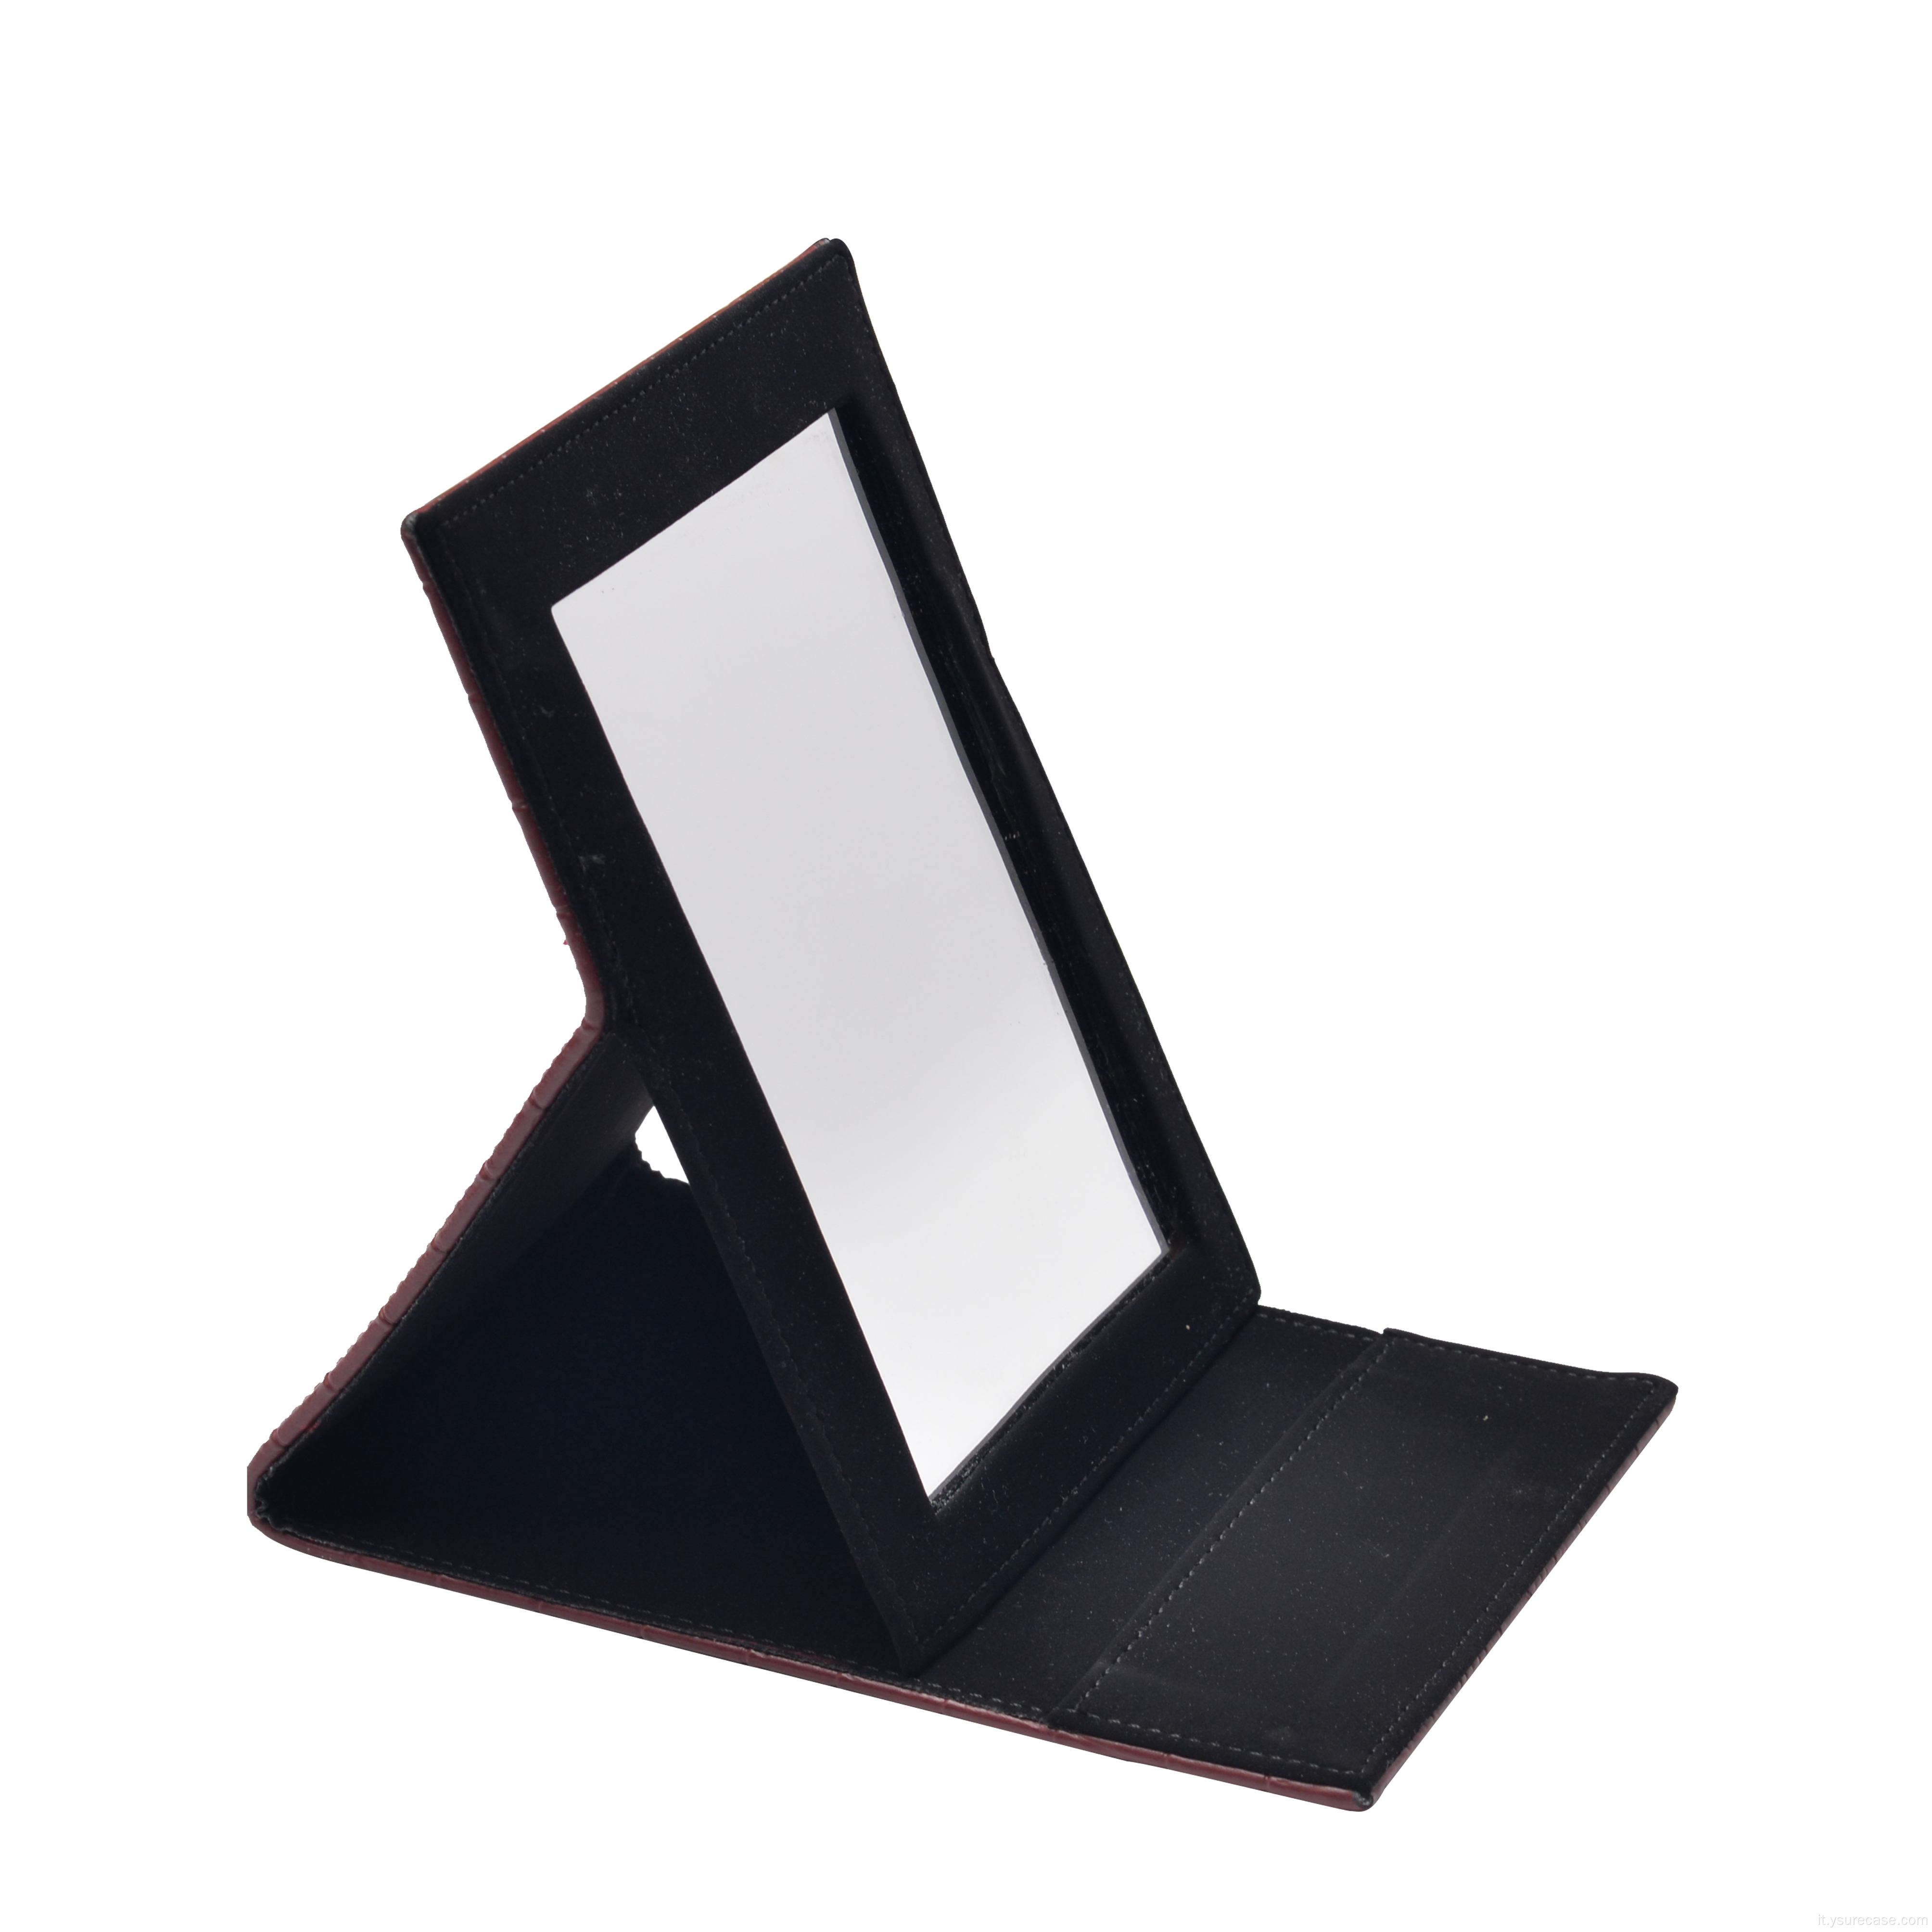 Sacca per protezione a specchio impermeabile portatile in pelle ysure